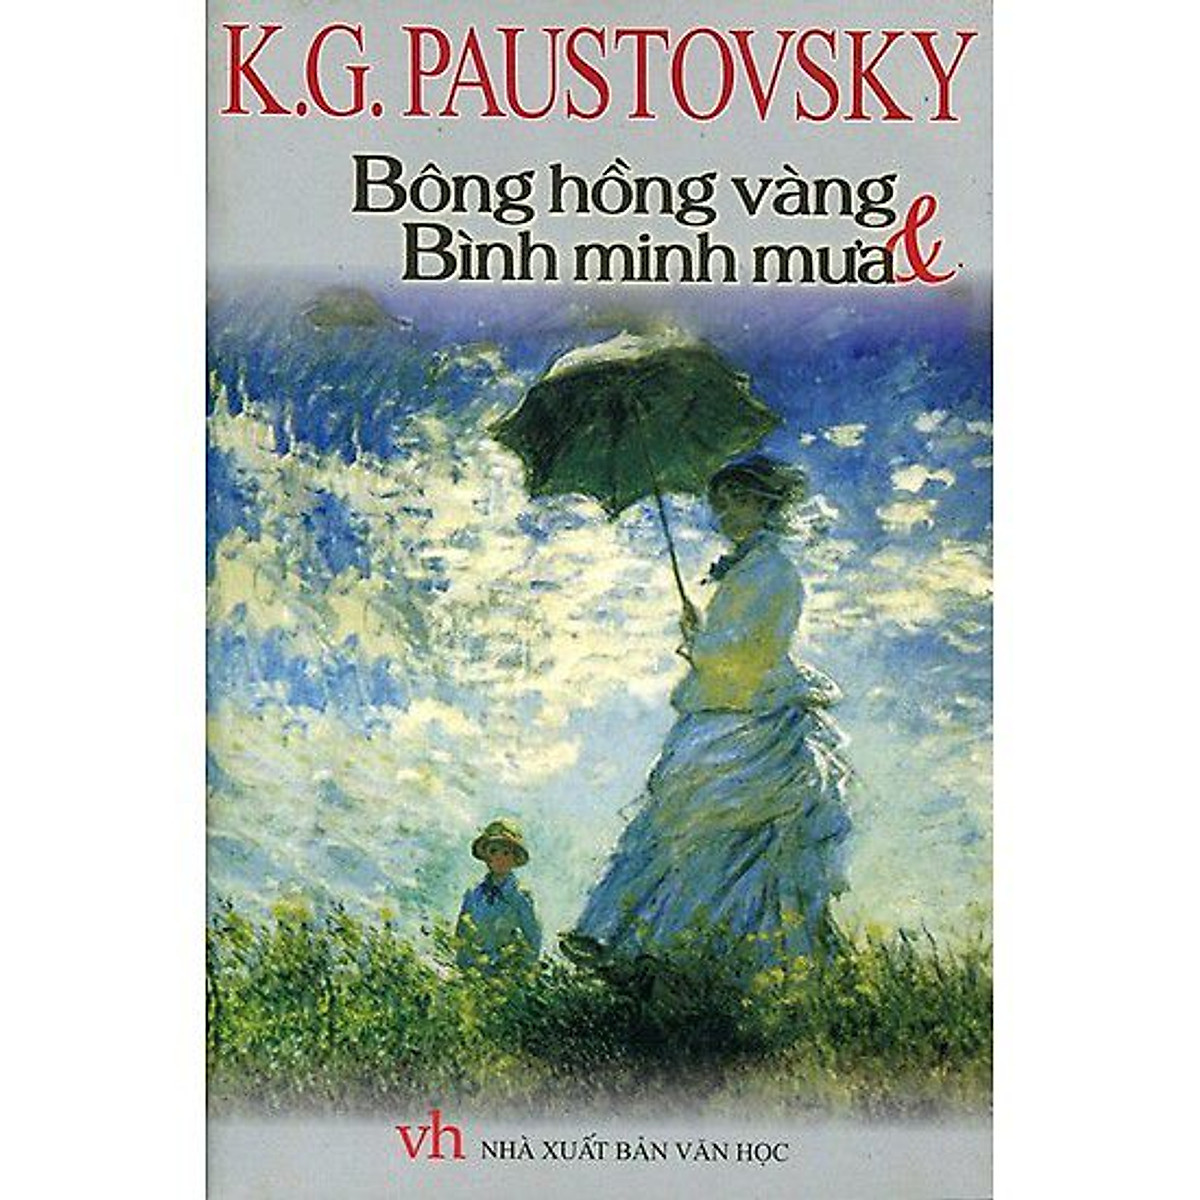 Bông hồng vàng và bình minh mưa (K.G Paustovsky) - Danh tác văn học Nga